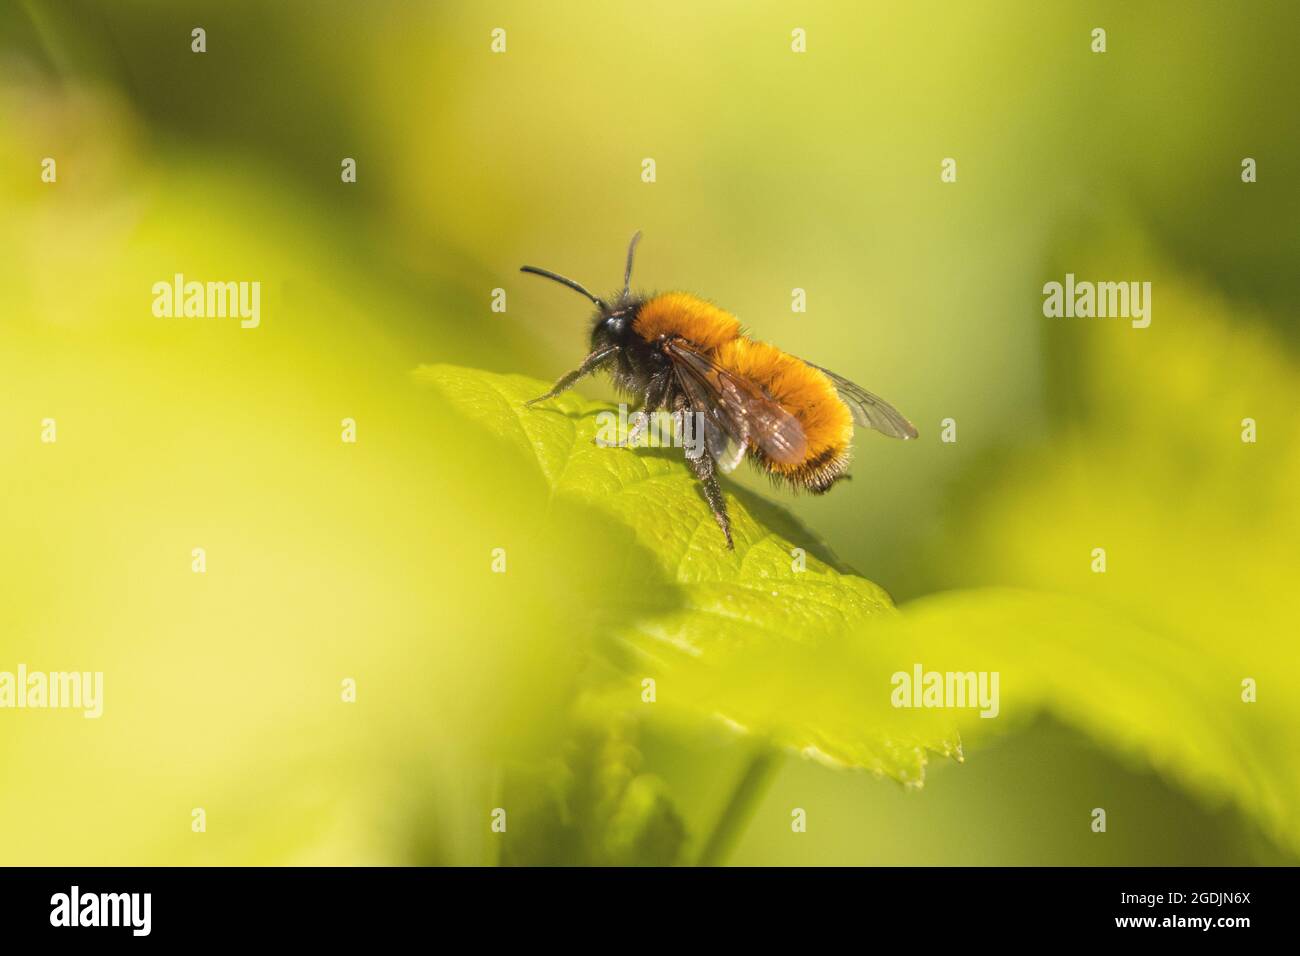 Abeille fourrache de Tawny, abeille minière de Tawny, abeille minière de Tawny (Andrena fulva, Andrena armata), sur une feuille de cassis, Allemagne, Bavière Banque D'Images